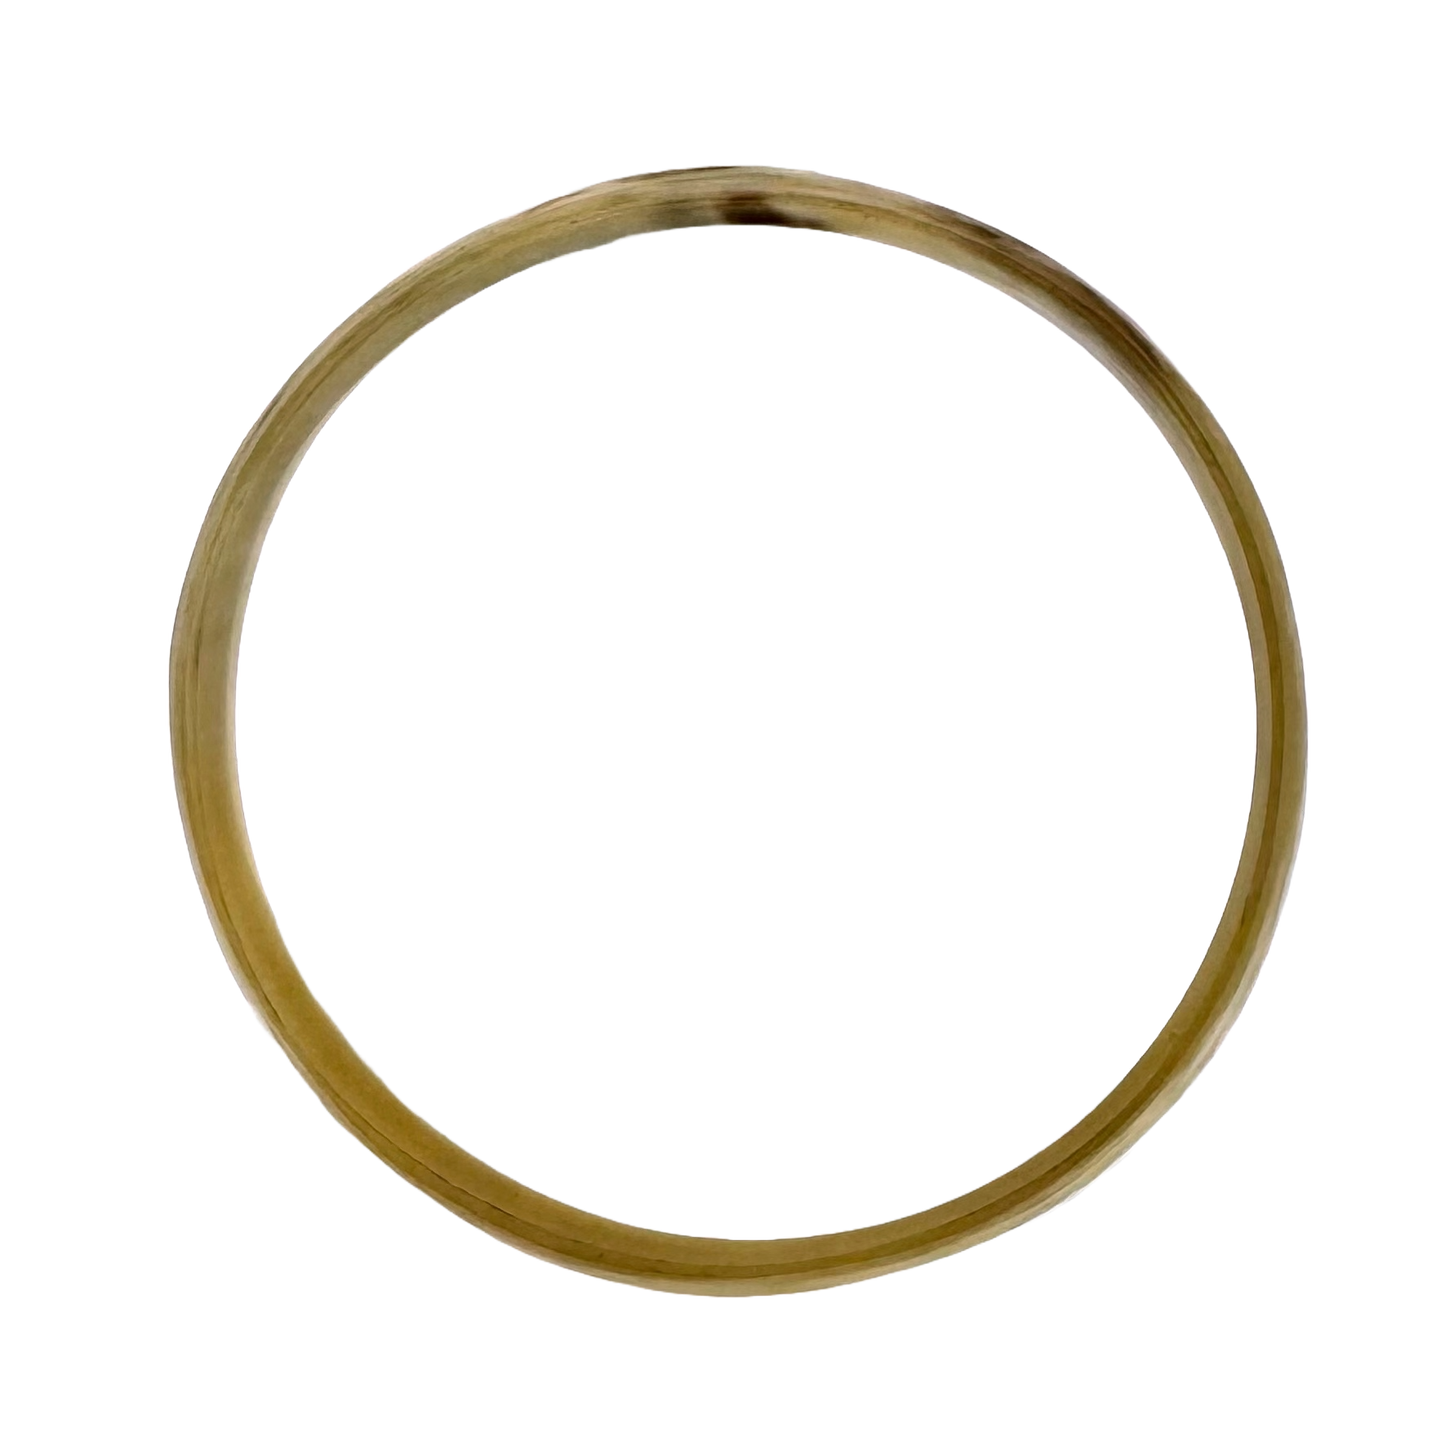 Horn Bangle Bracelet - Medium